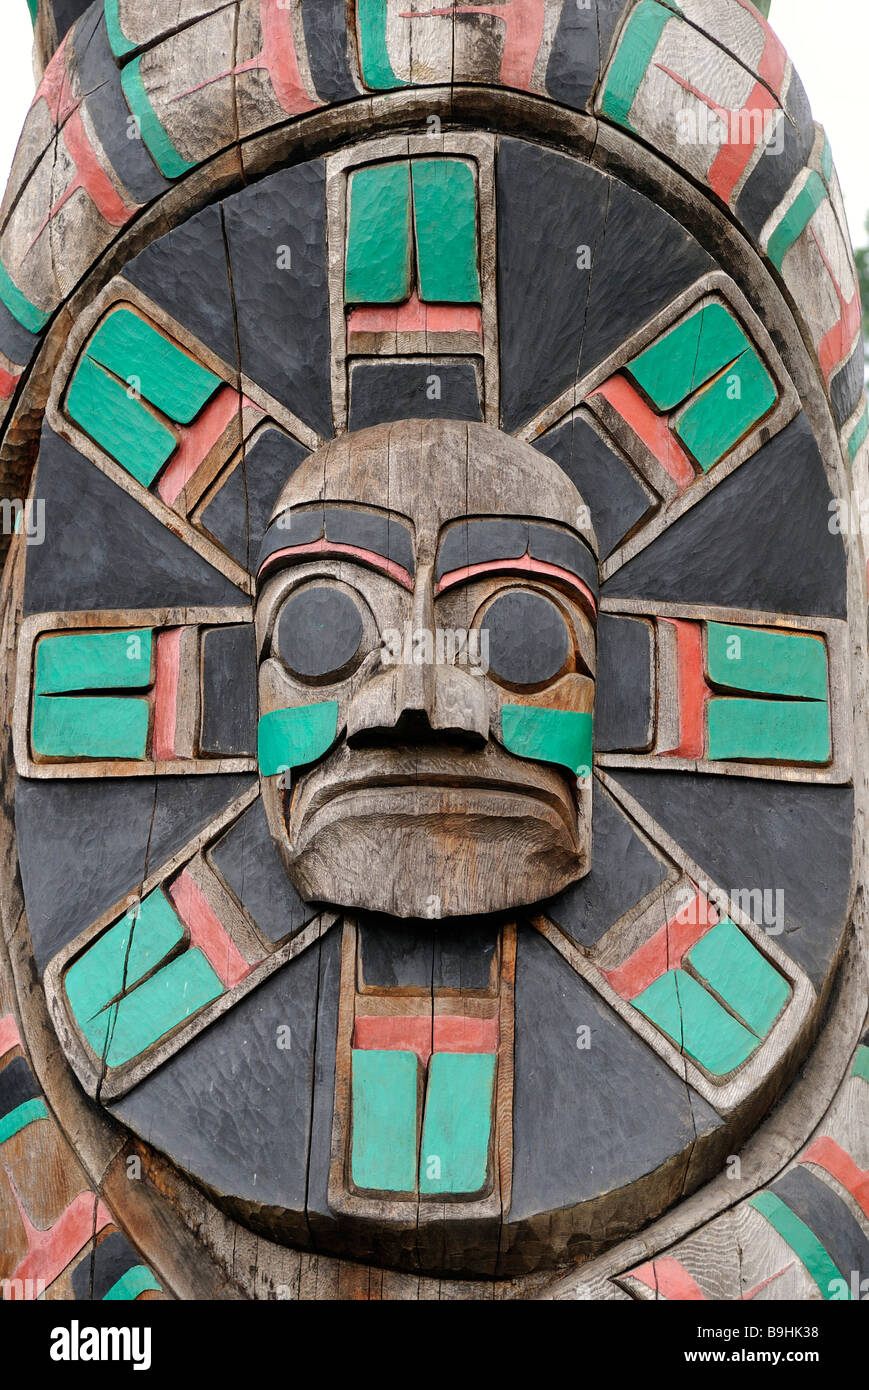 Totem de la tribu Cowichan, affichage détaillé, Duncan, île de Vancouver, Colombie-Britannique, Canada, Amérique du Nord Banque D'Images